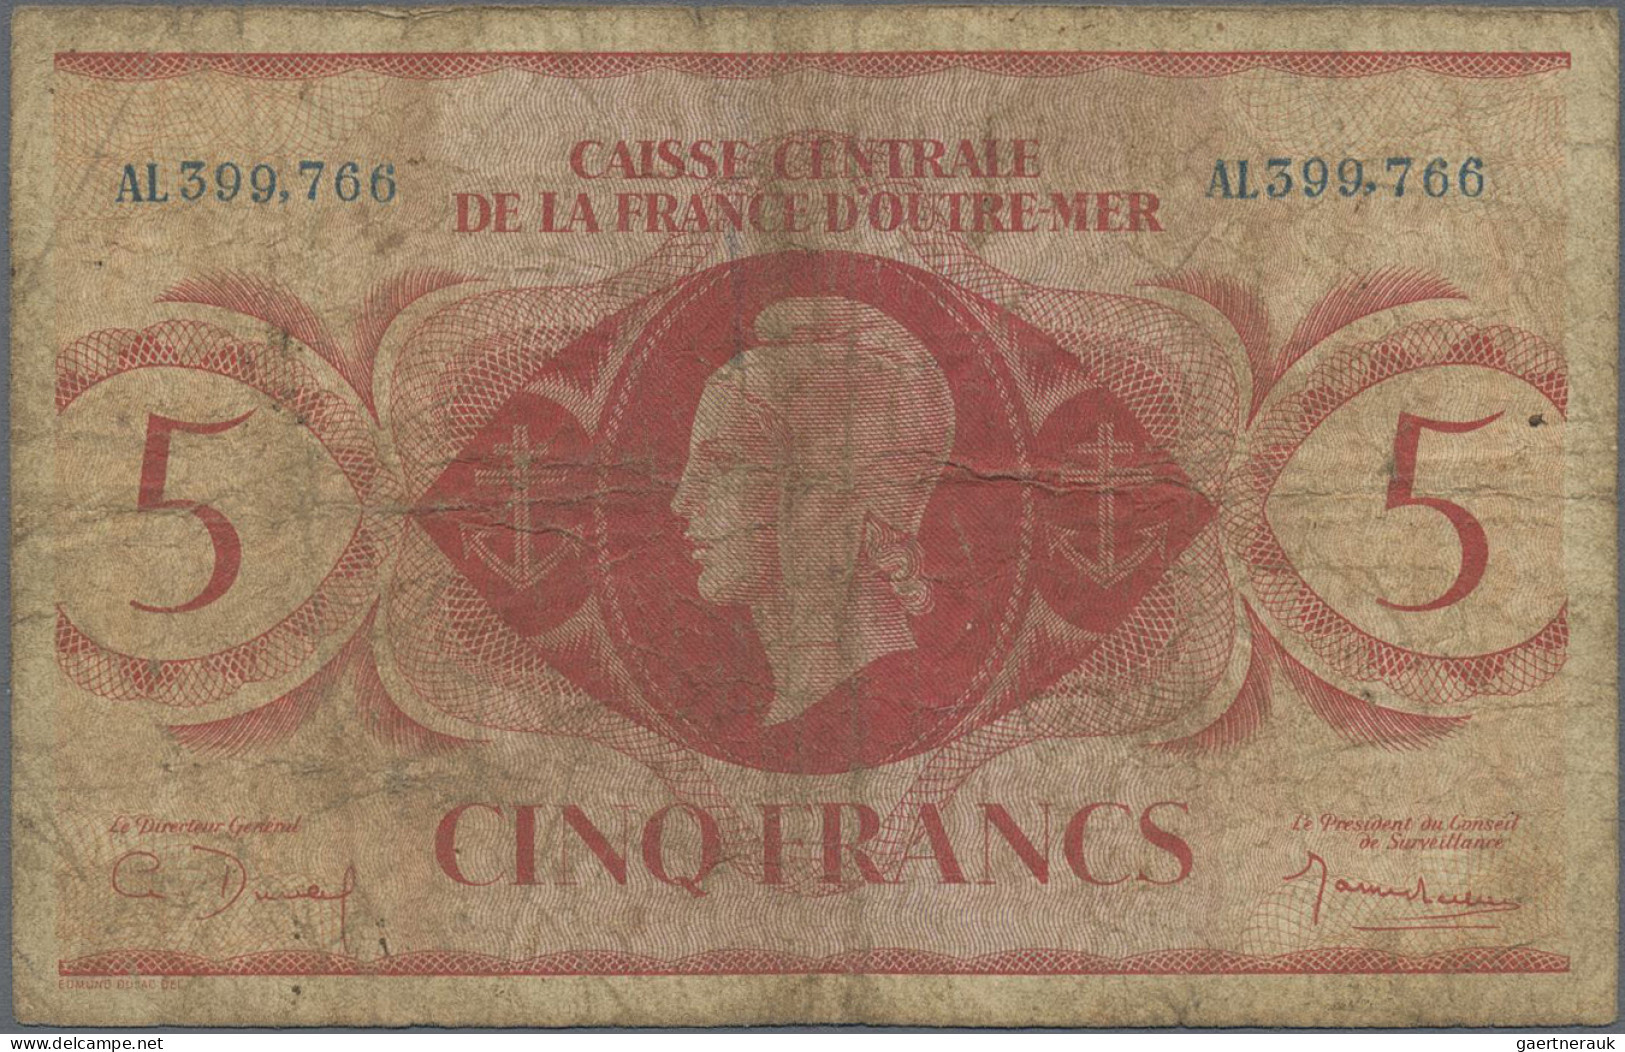 French Equatorial Africa: Caisse Centrale De La France D'Outre-Mer – FRENCH EQUA - Guinea Equatoriale